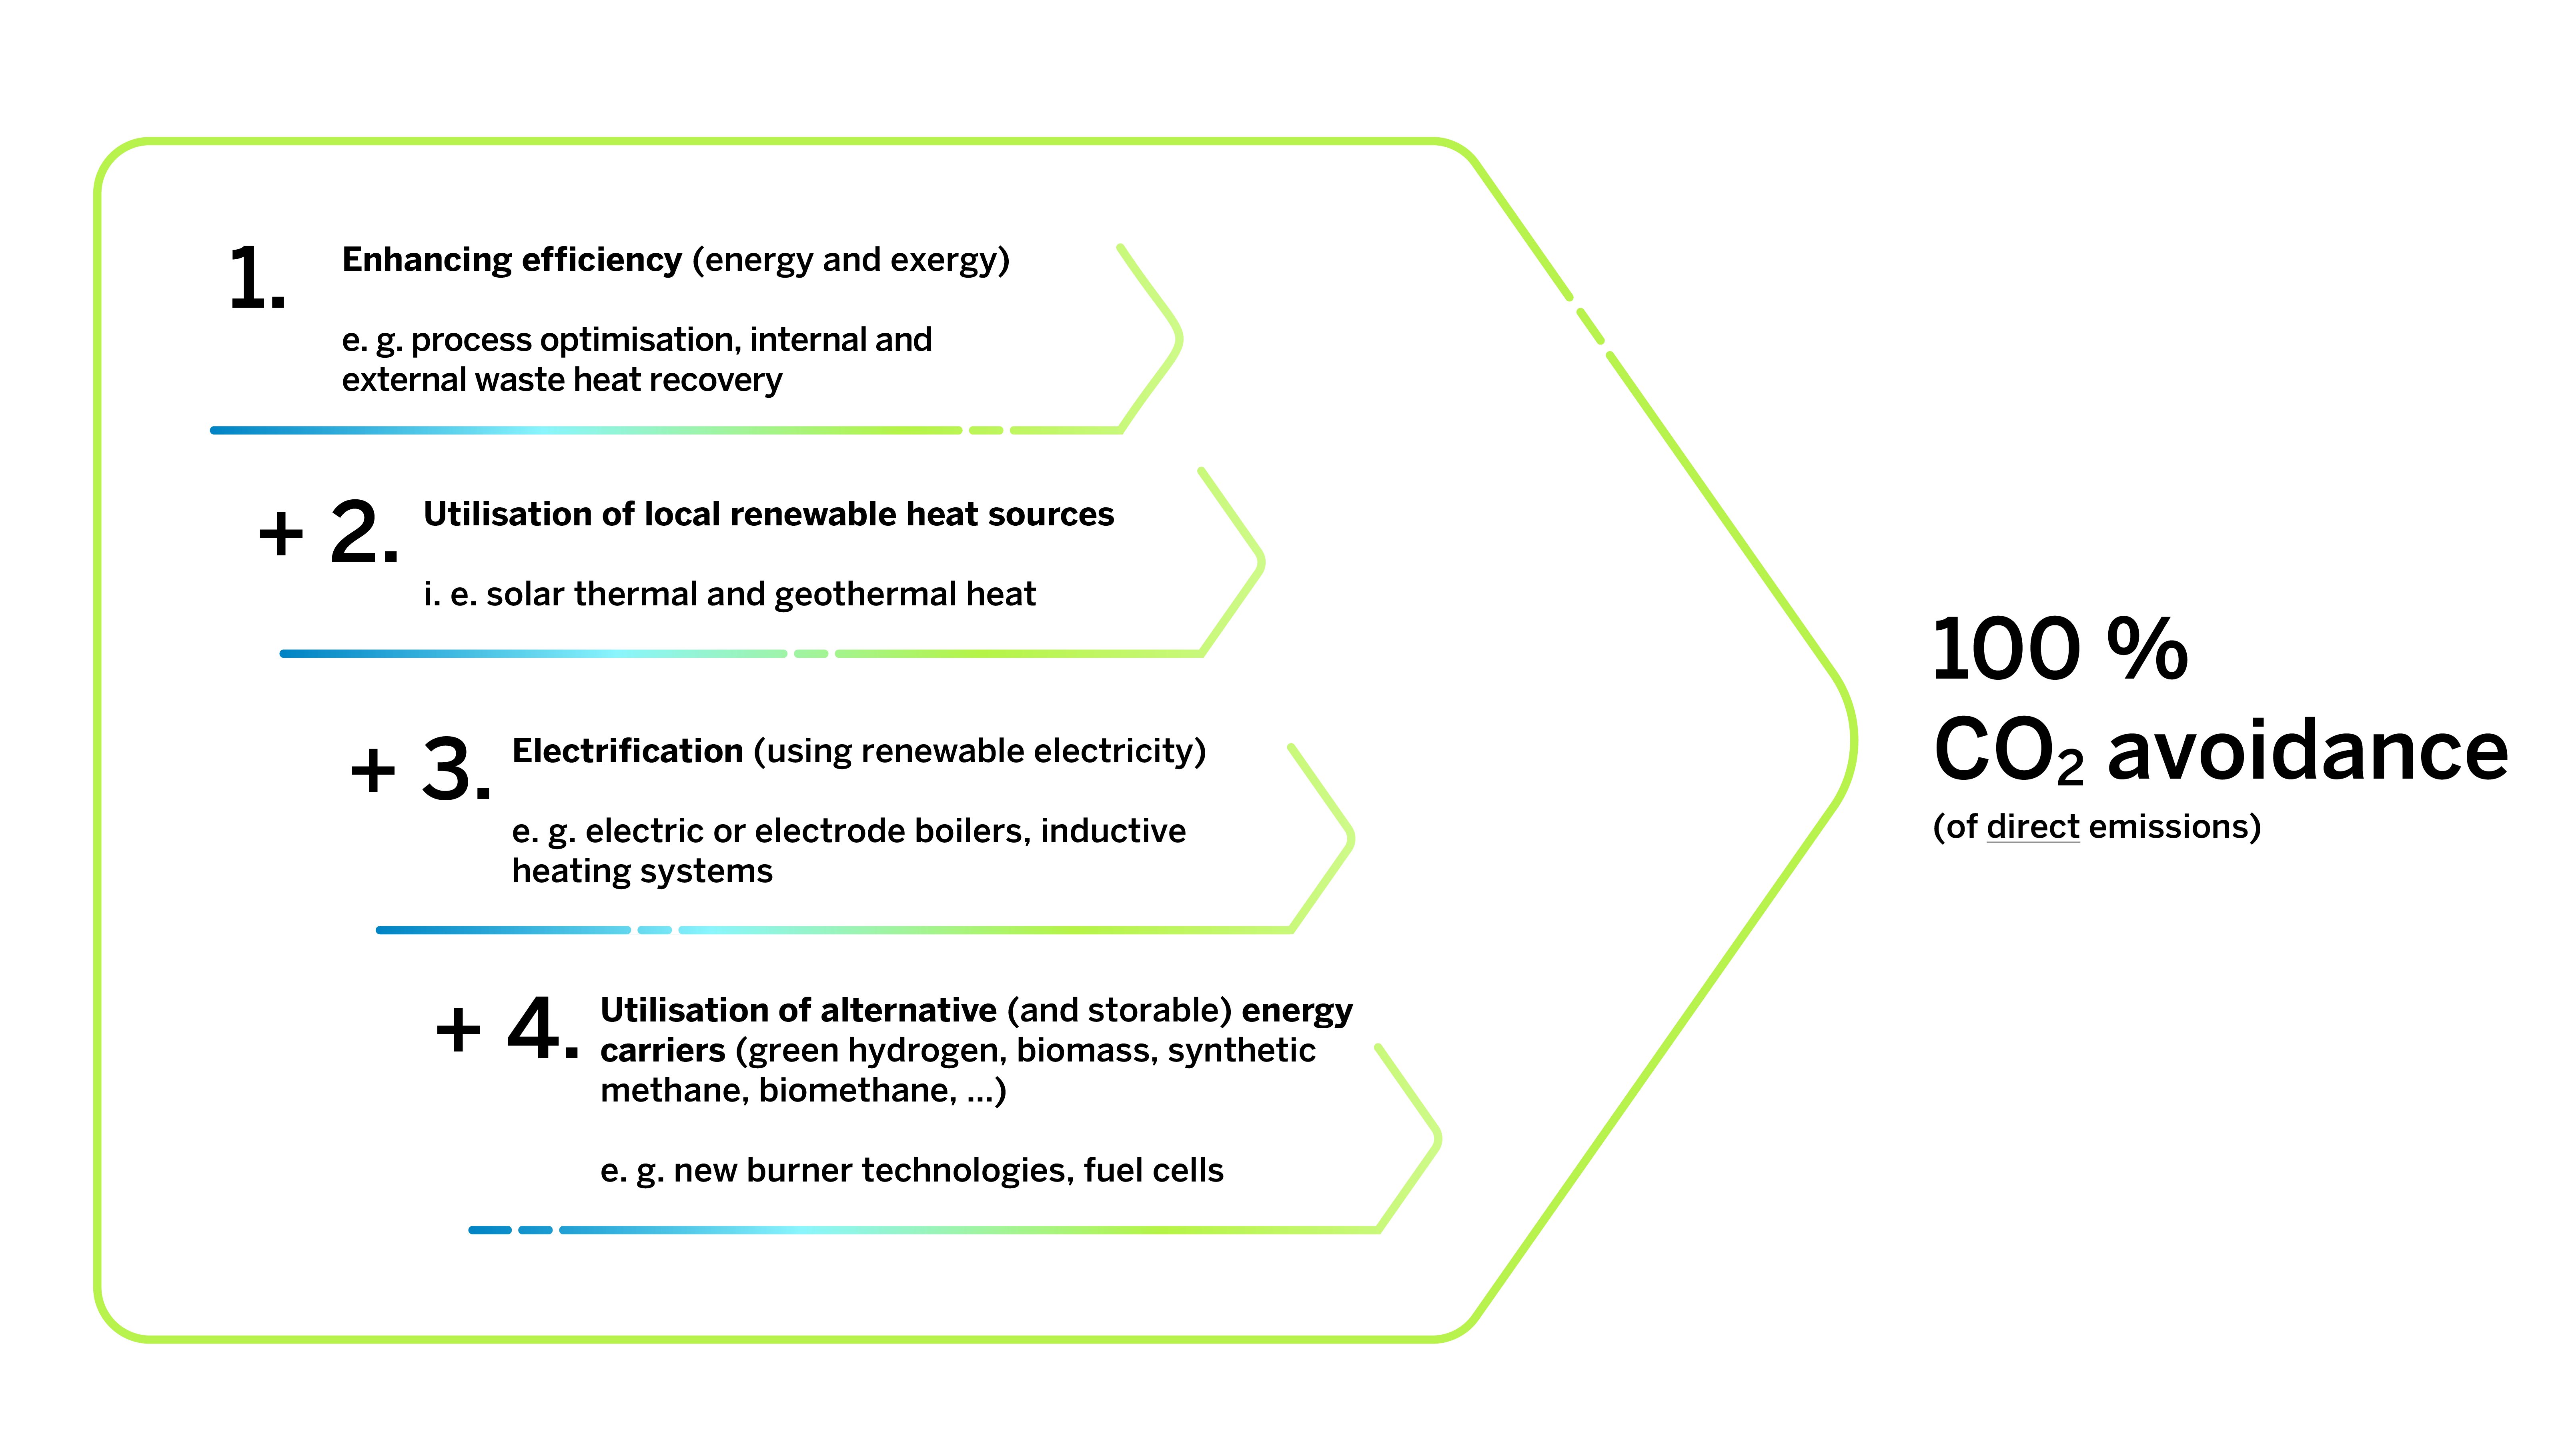 Schaubild symbolisiert vier Stufen: Steigerung der Effizienz, Erschließung erneuerbarer Wärmequellen, elektrische Wärmeerzeugung und alternative Energieträger